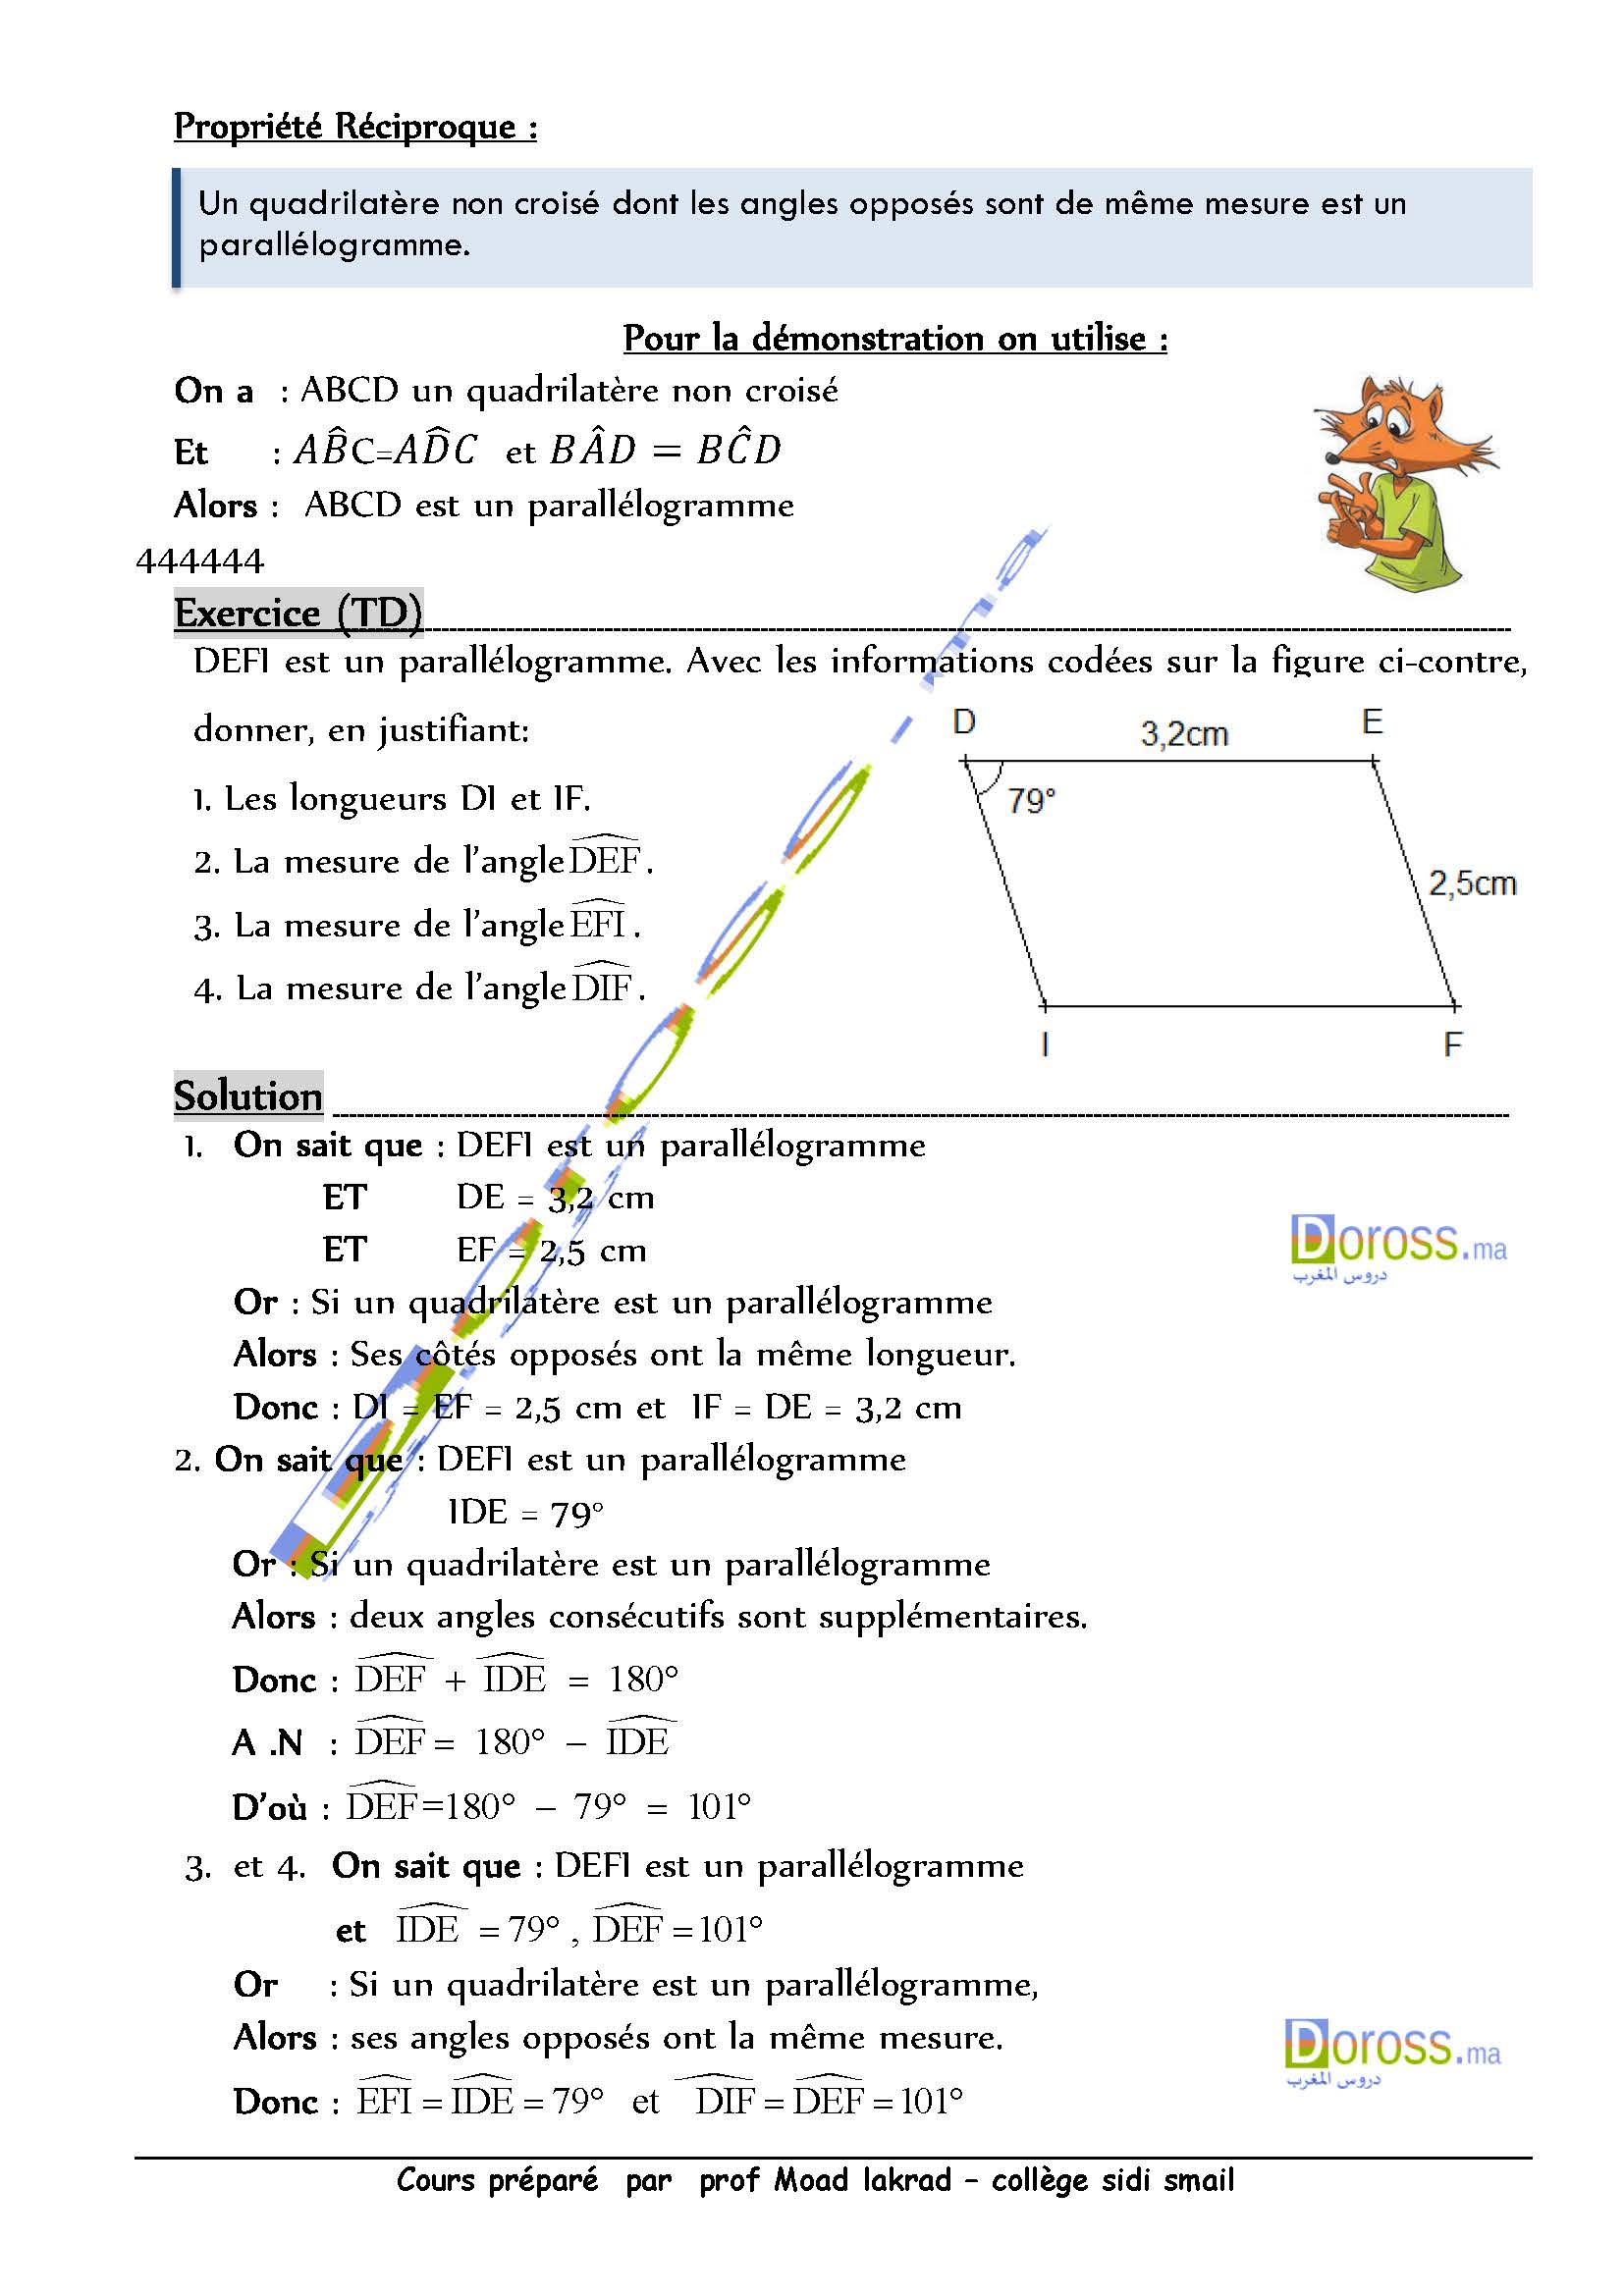 دروس الرياضيات :Parallélogramme| الأولى خيار فرنسي 